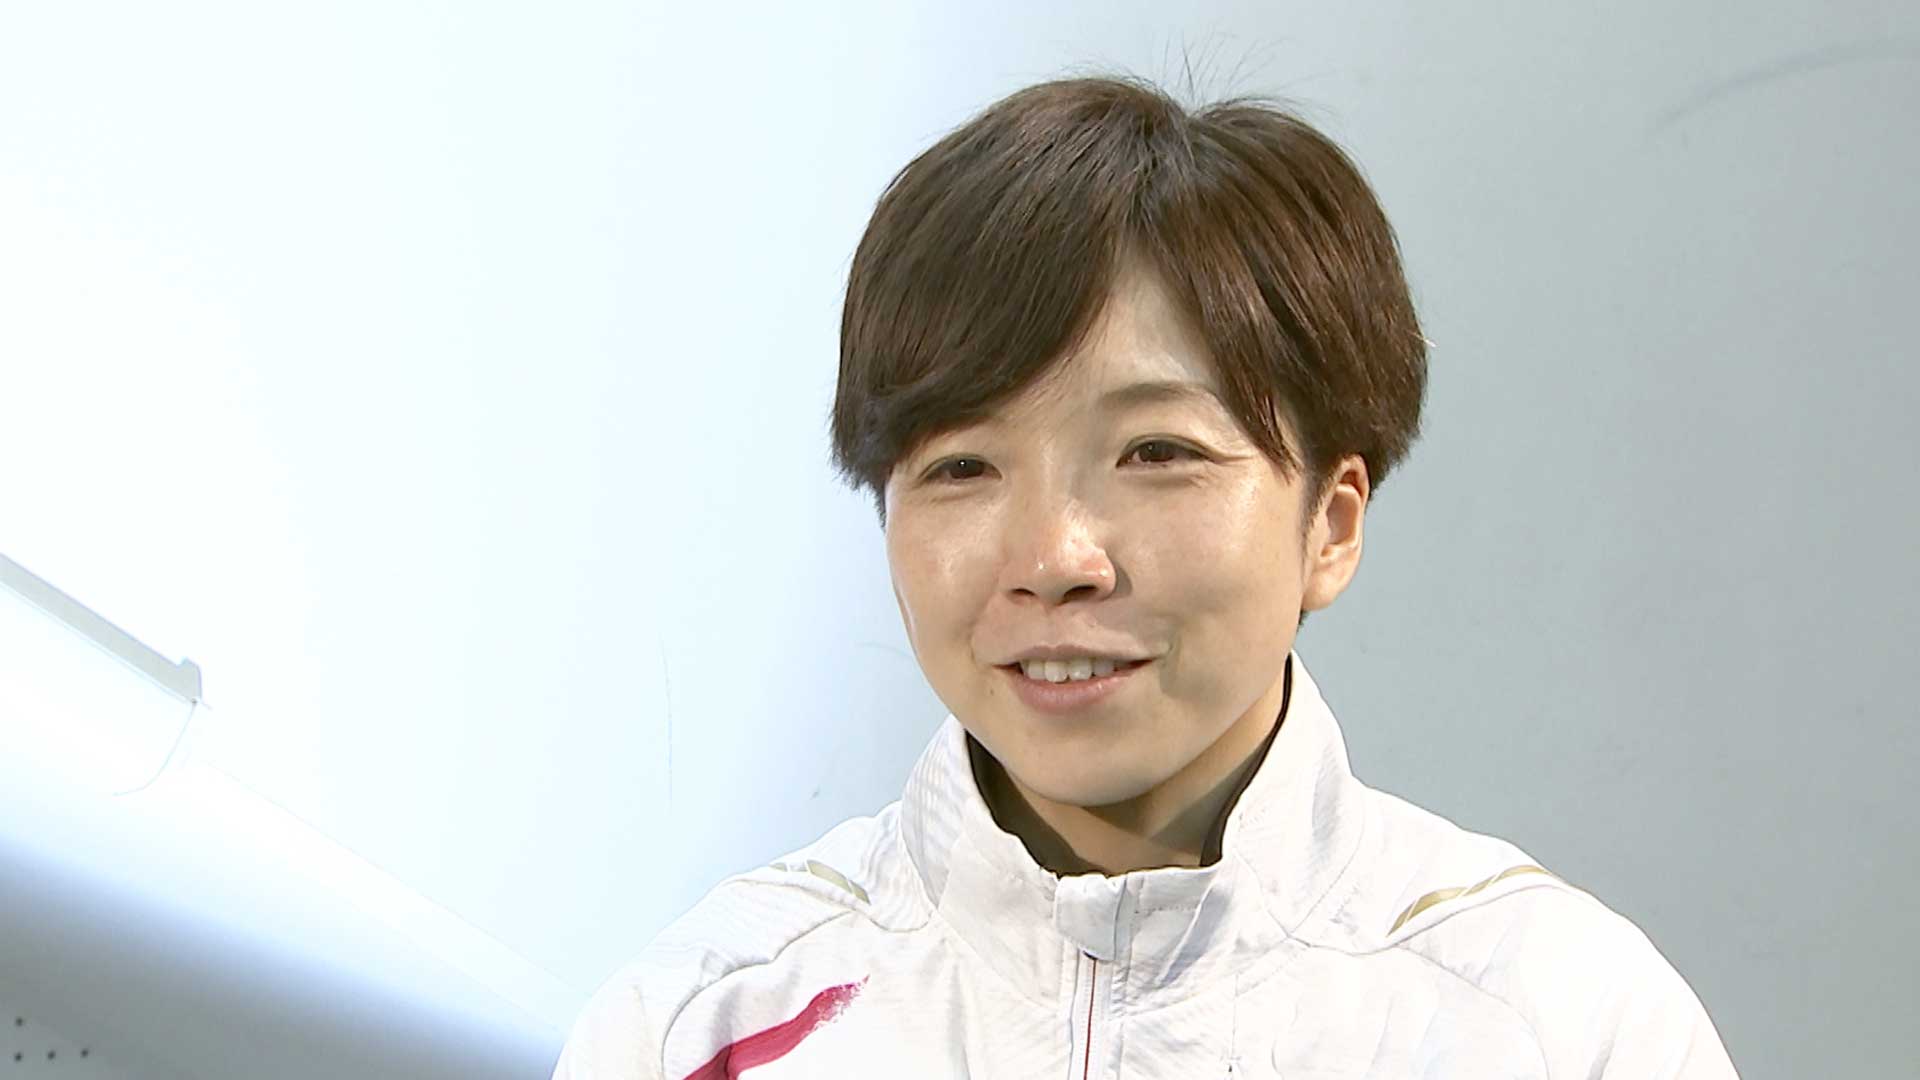 スピードスケート小平奈緒 現役ラストラン37秒49で優勝 地元長野で有終の美「幸せでいっぱいです」